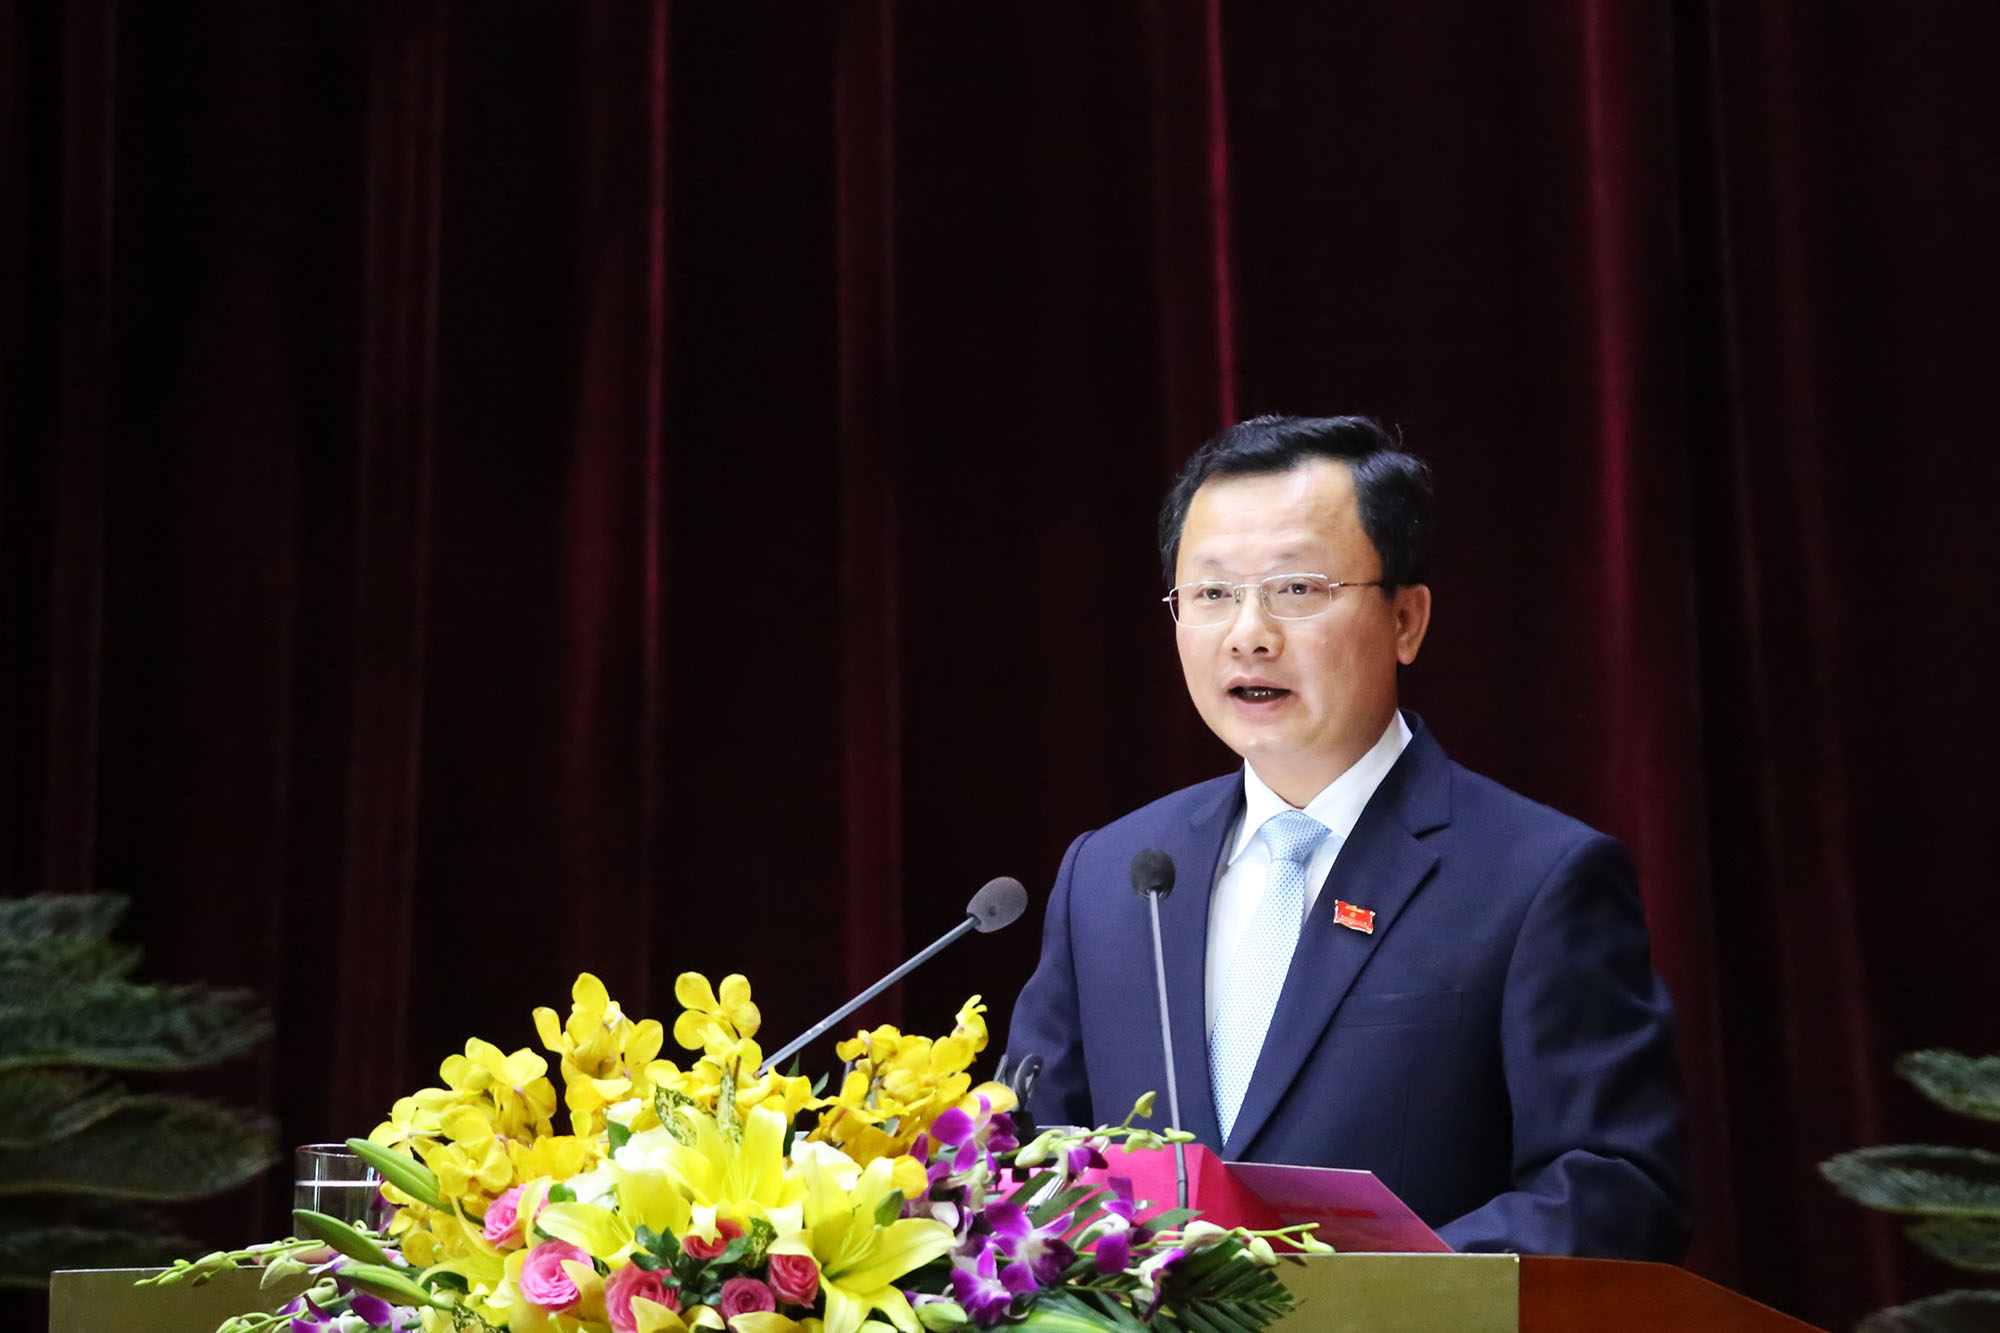 Đồng chí Cao Tường Huy, Trưởng ban Kinh tế - Ngân sách HĐND tỉnh trình bày các báo cáo thẩm tra của ban.